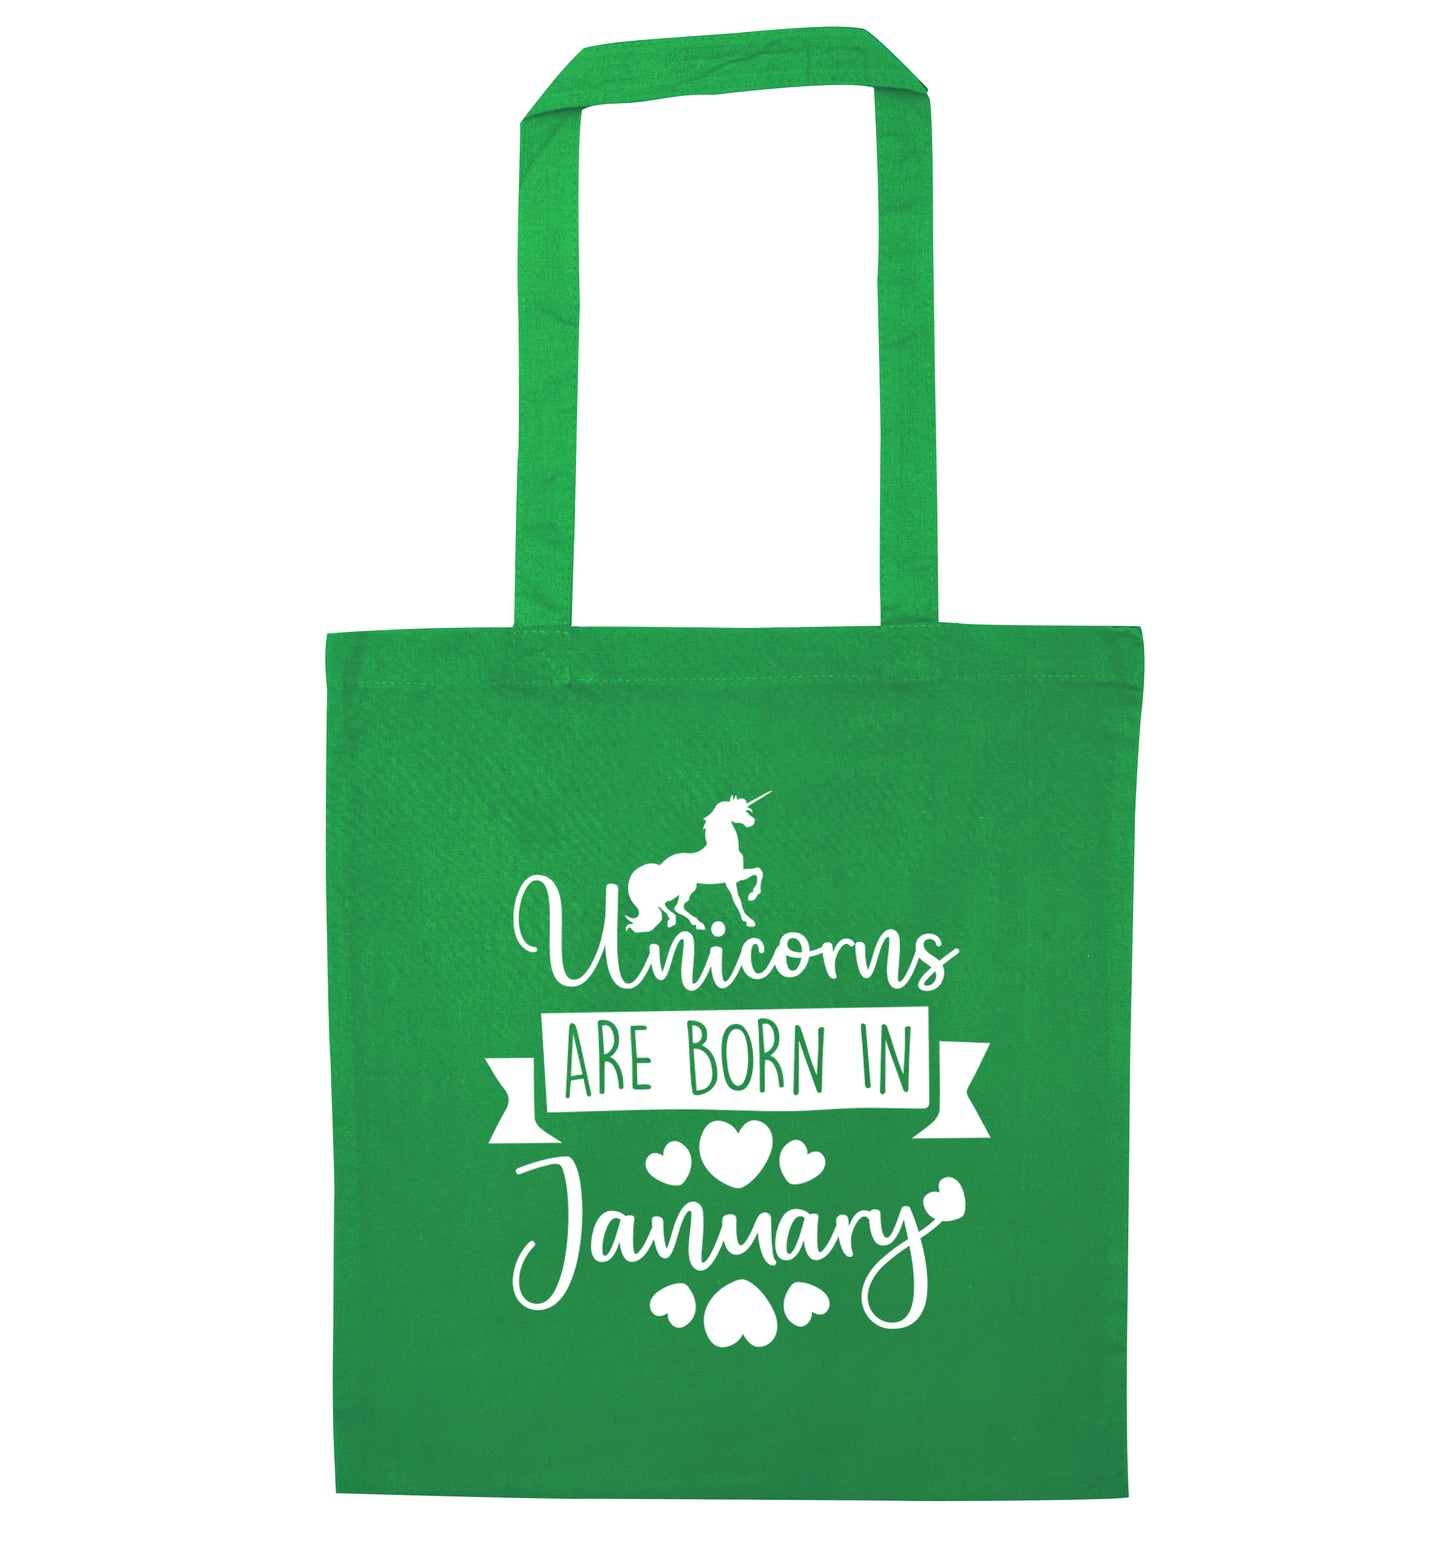 Unicorns are born in January green tote bag